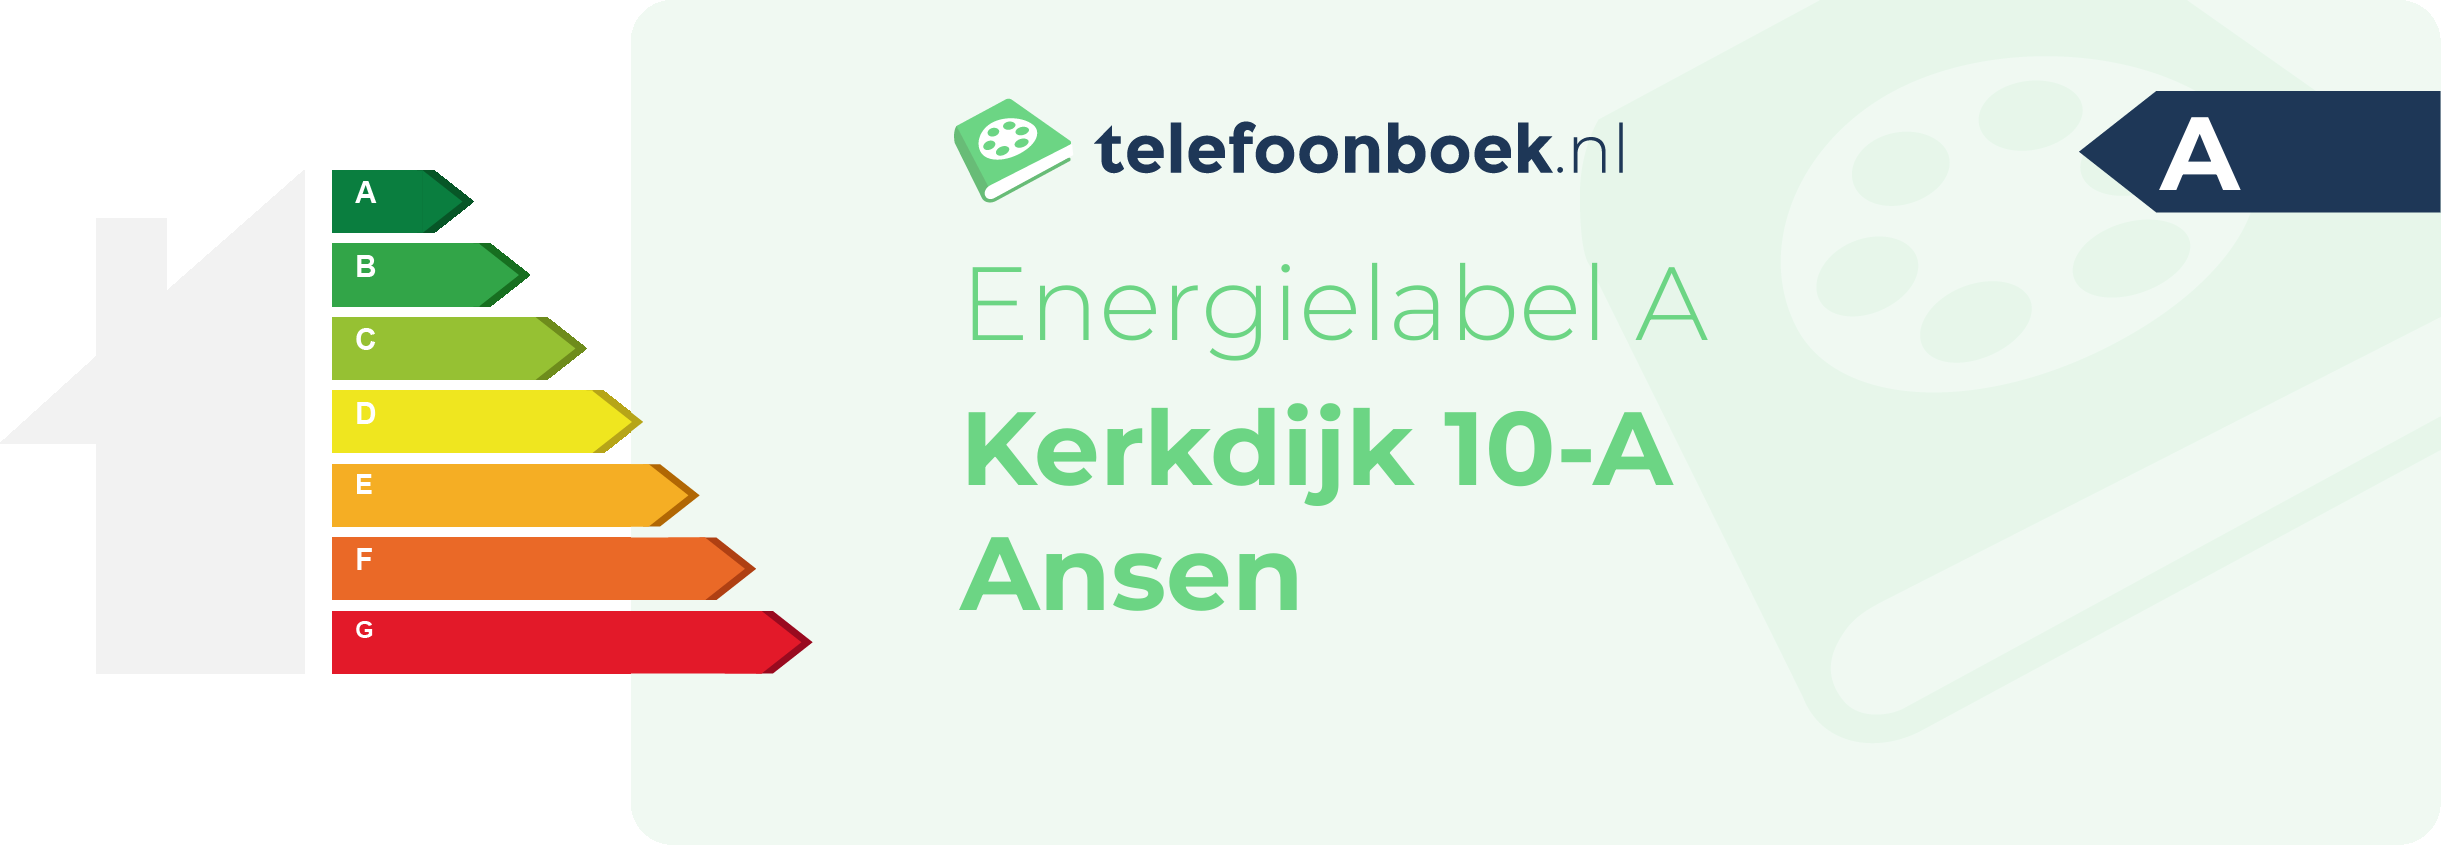 Energielabel Kerkdijk 10-A Ansen